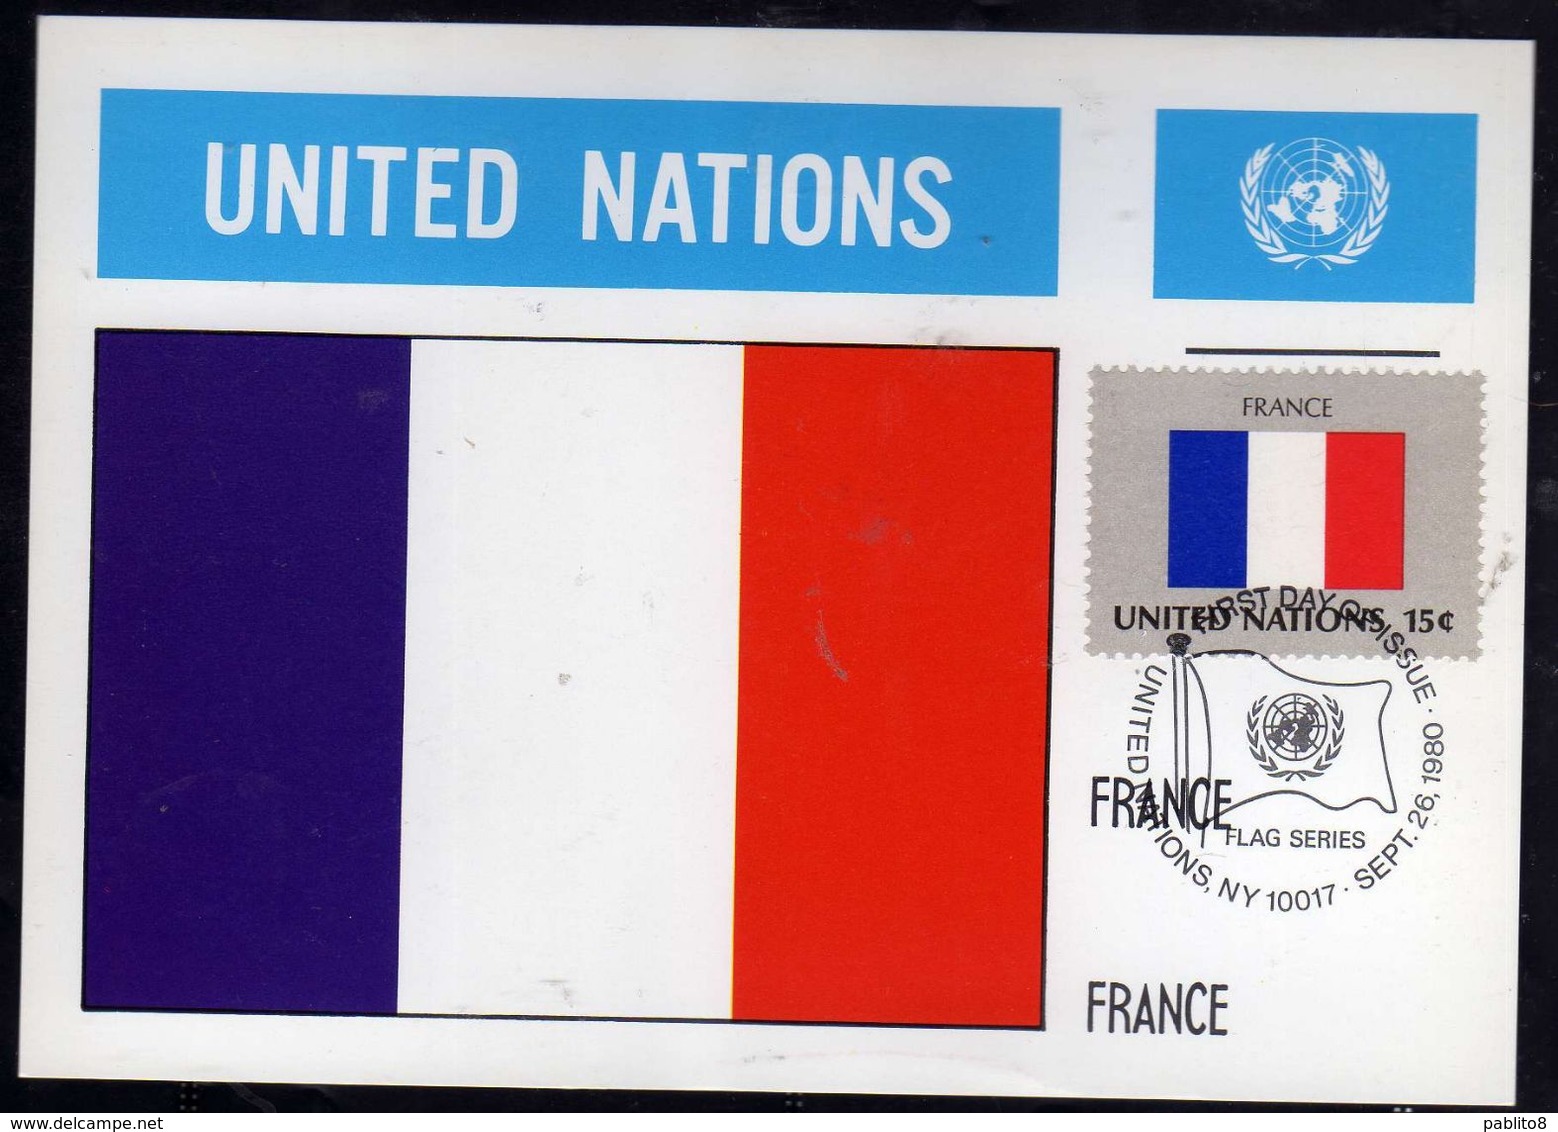 UNITED NATIONS NEW YORK ONU UN UNO 26 9 1980 FLAGS FRANCE FRANCIA FDC MAXI CARD CARTOLINA MAXIMUM - Cartes-maximum